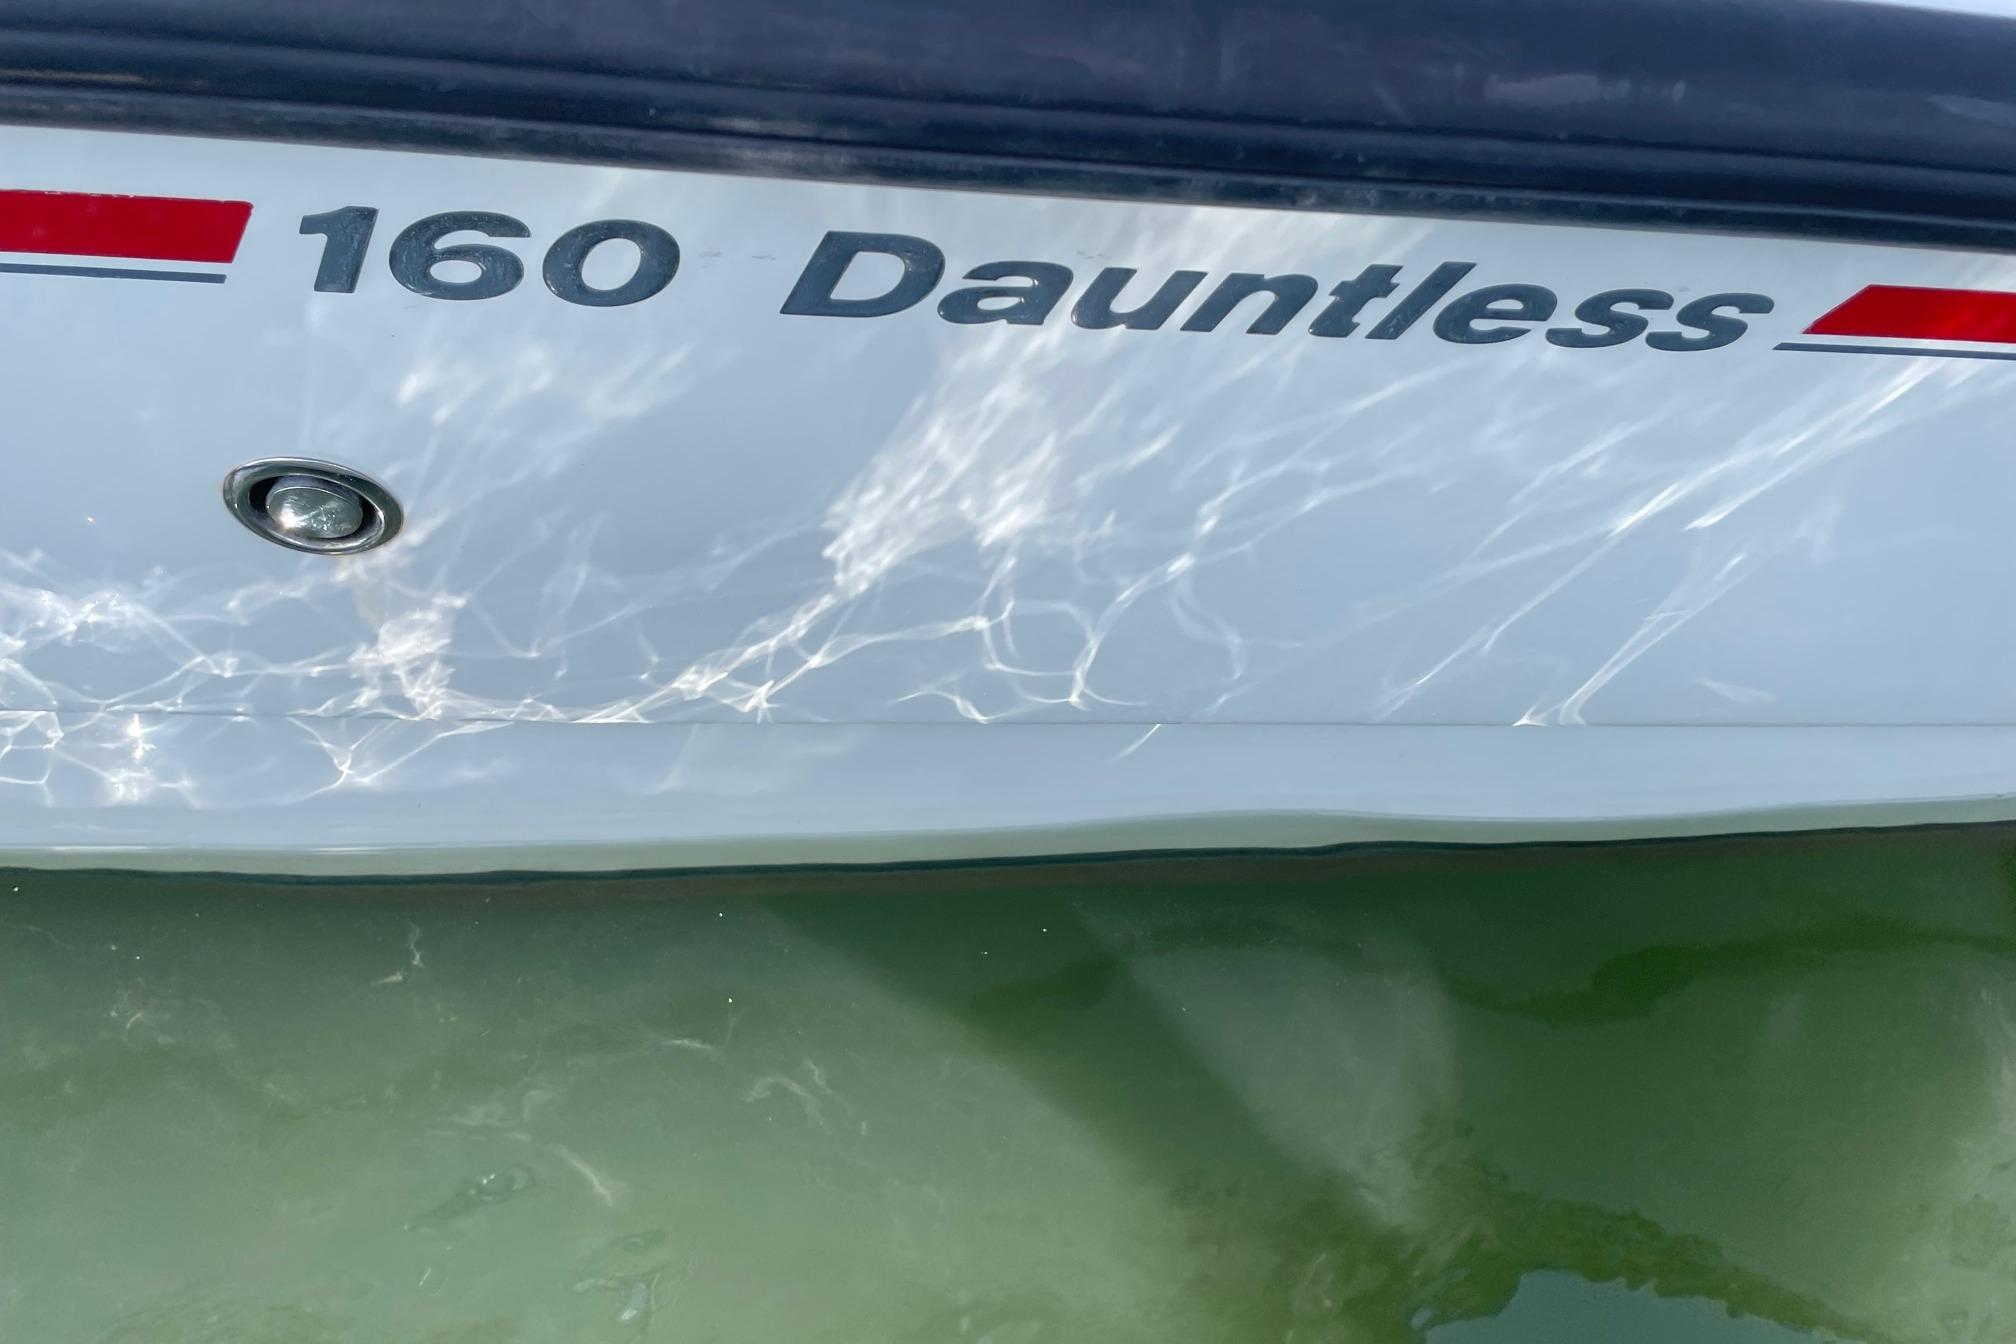 2004 Boston Whaler 160 Dauntless